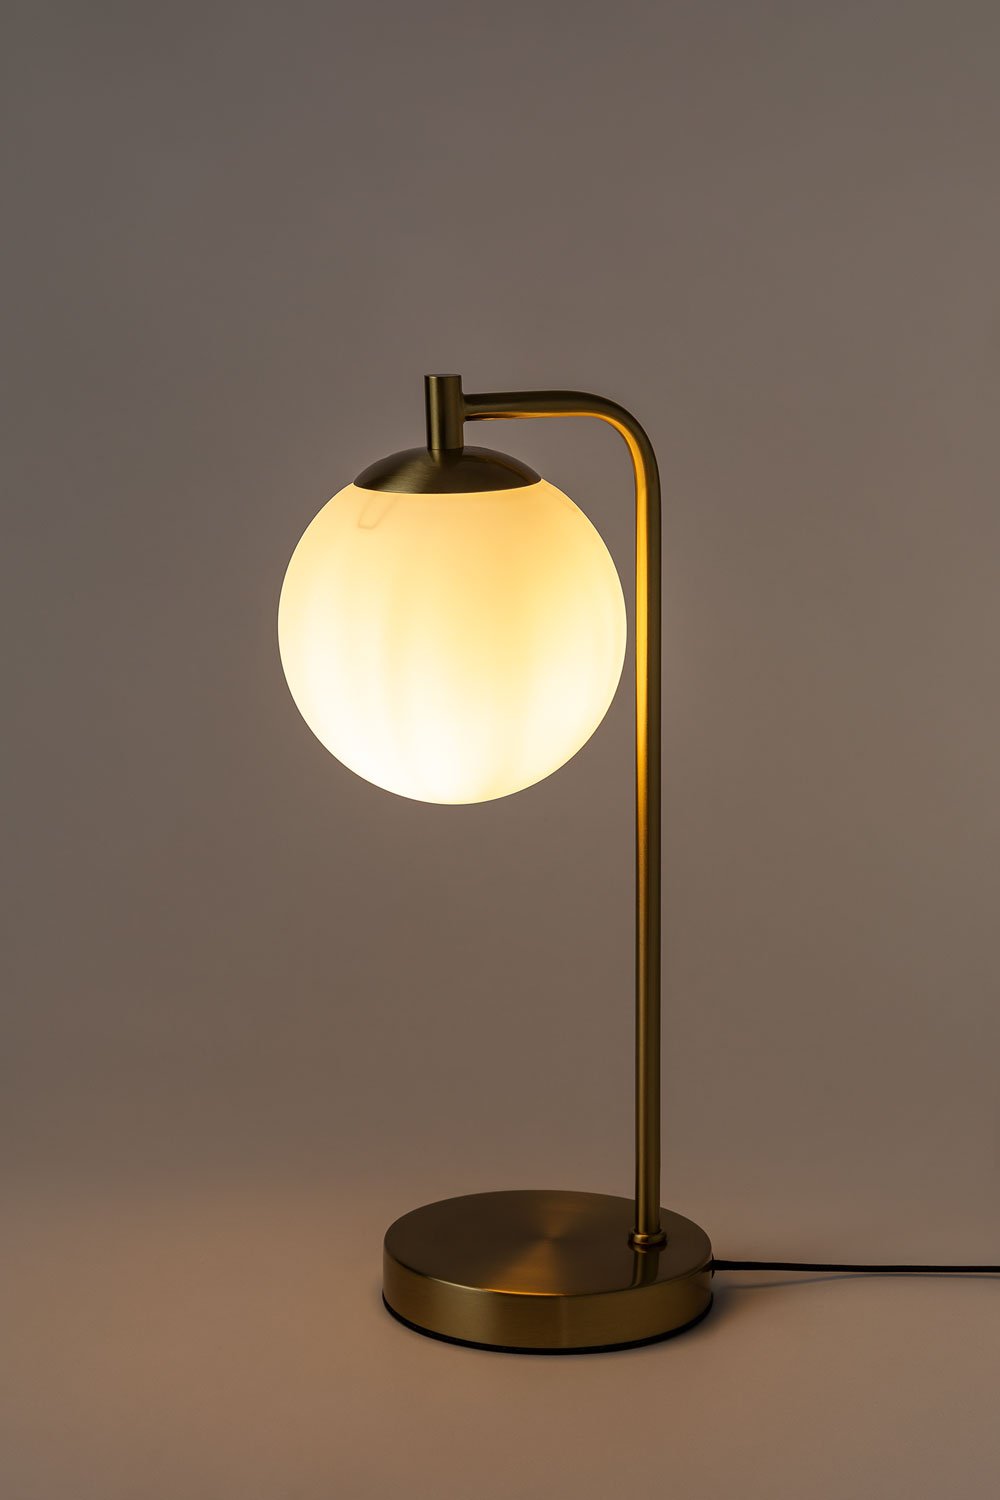 Vous recherchez une lampe à poser originale et design : découvrez la boule  de cristal signée GINGKO chez ksl iving